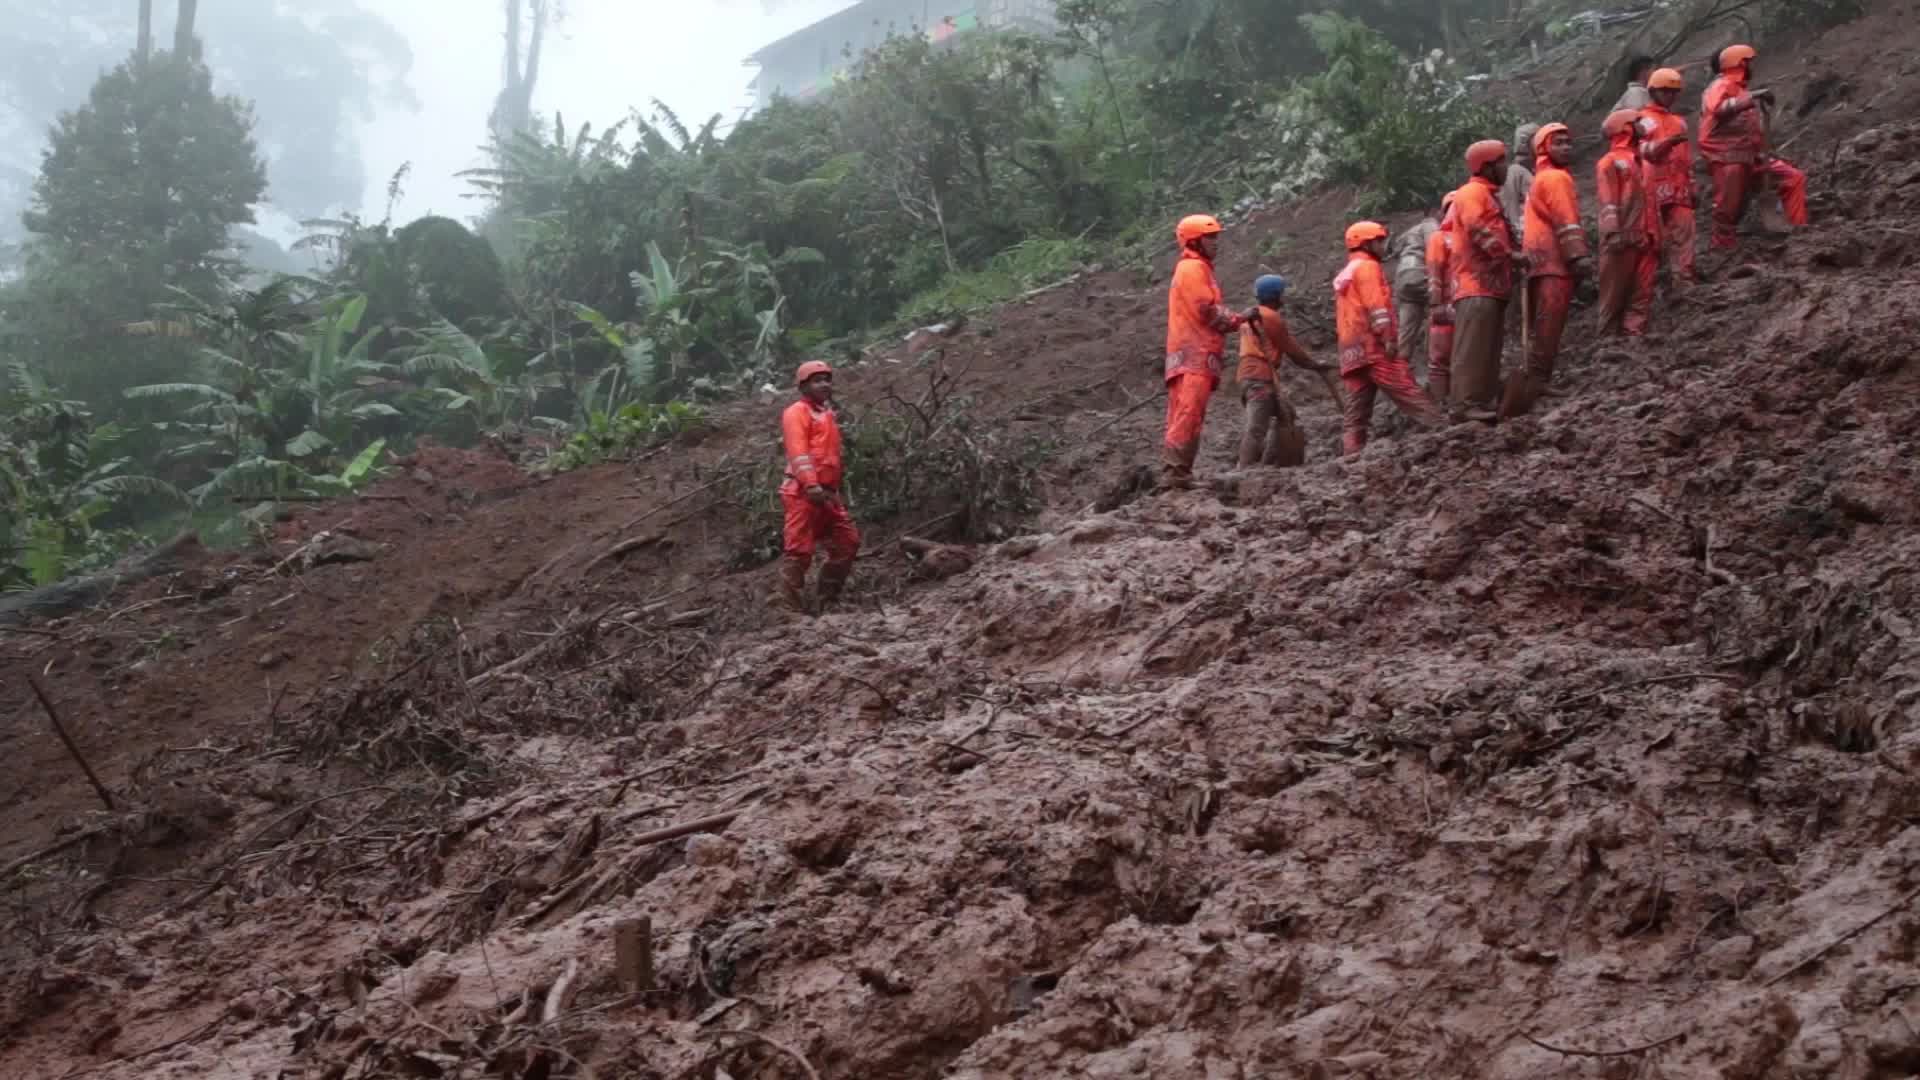 Landslide victim evacuation at Bogor, West Java